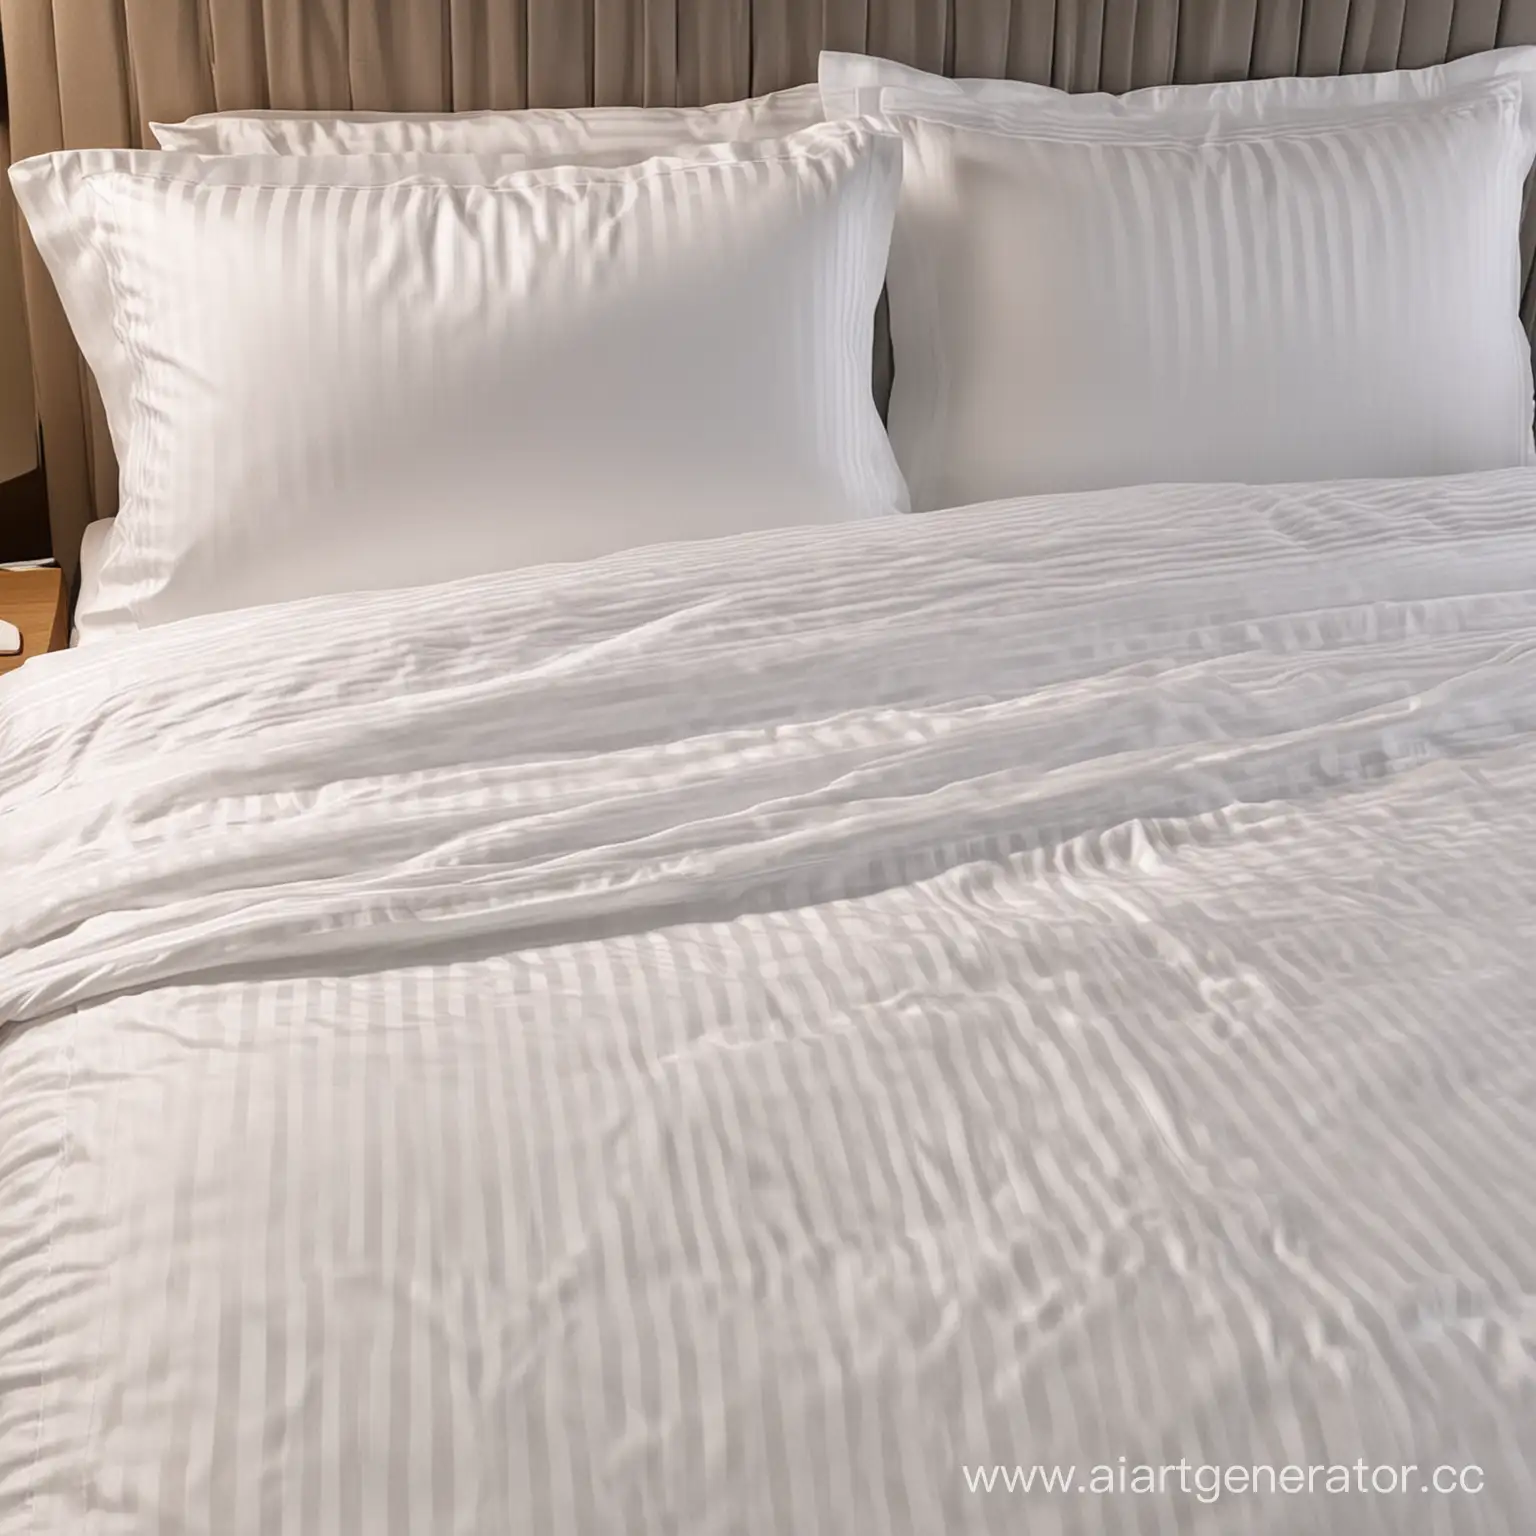 Кровать в номере гостиницы заправленная, постельное белье ткань сатин-страйп (в полоску), цвет белый, ширина повторяющихся полос 1 см